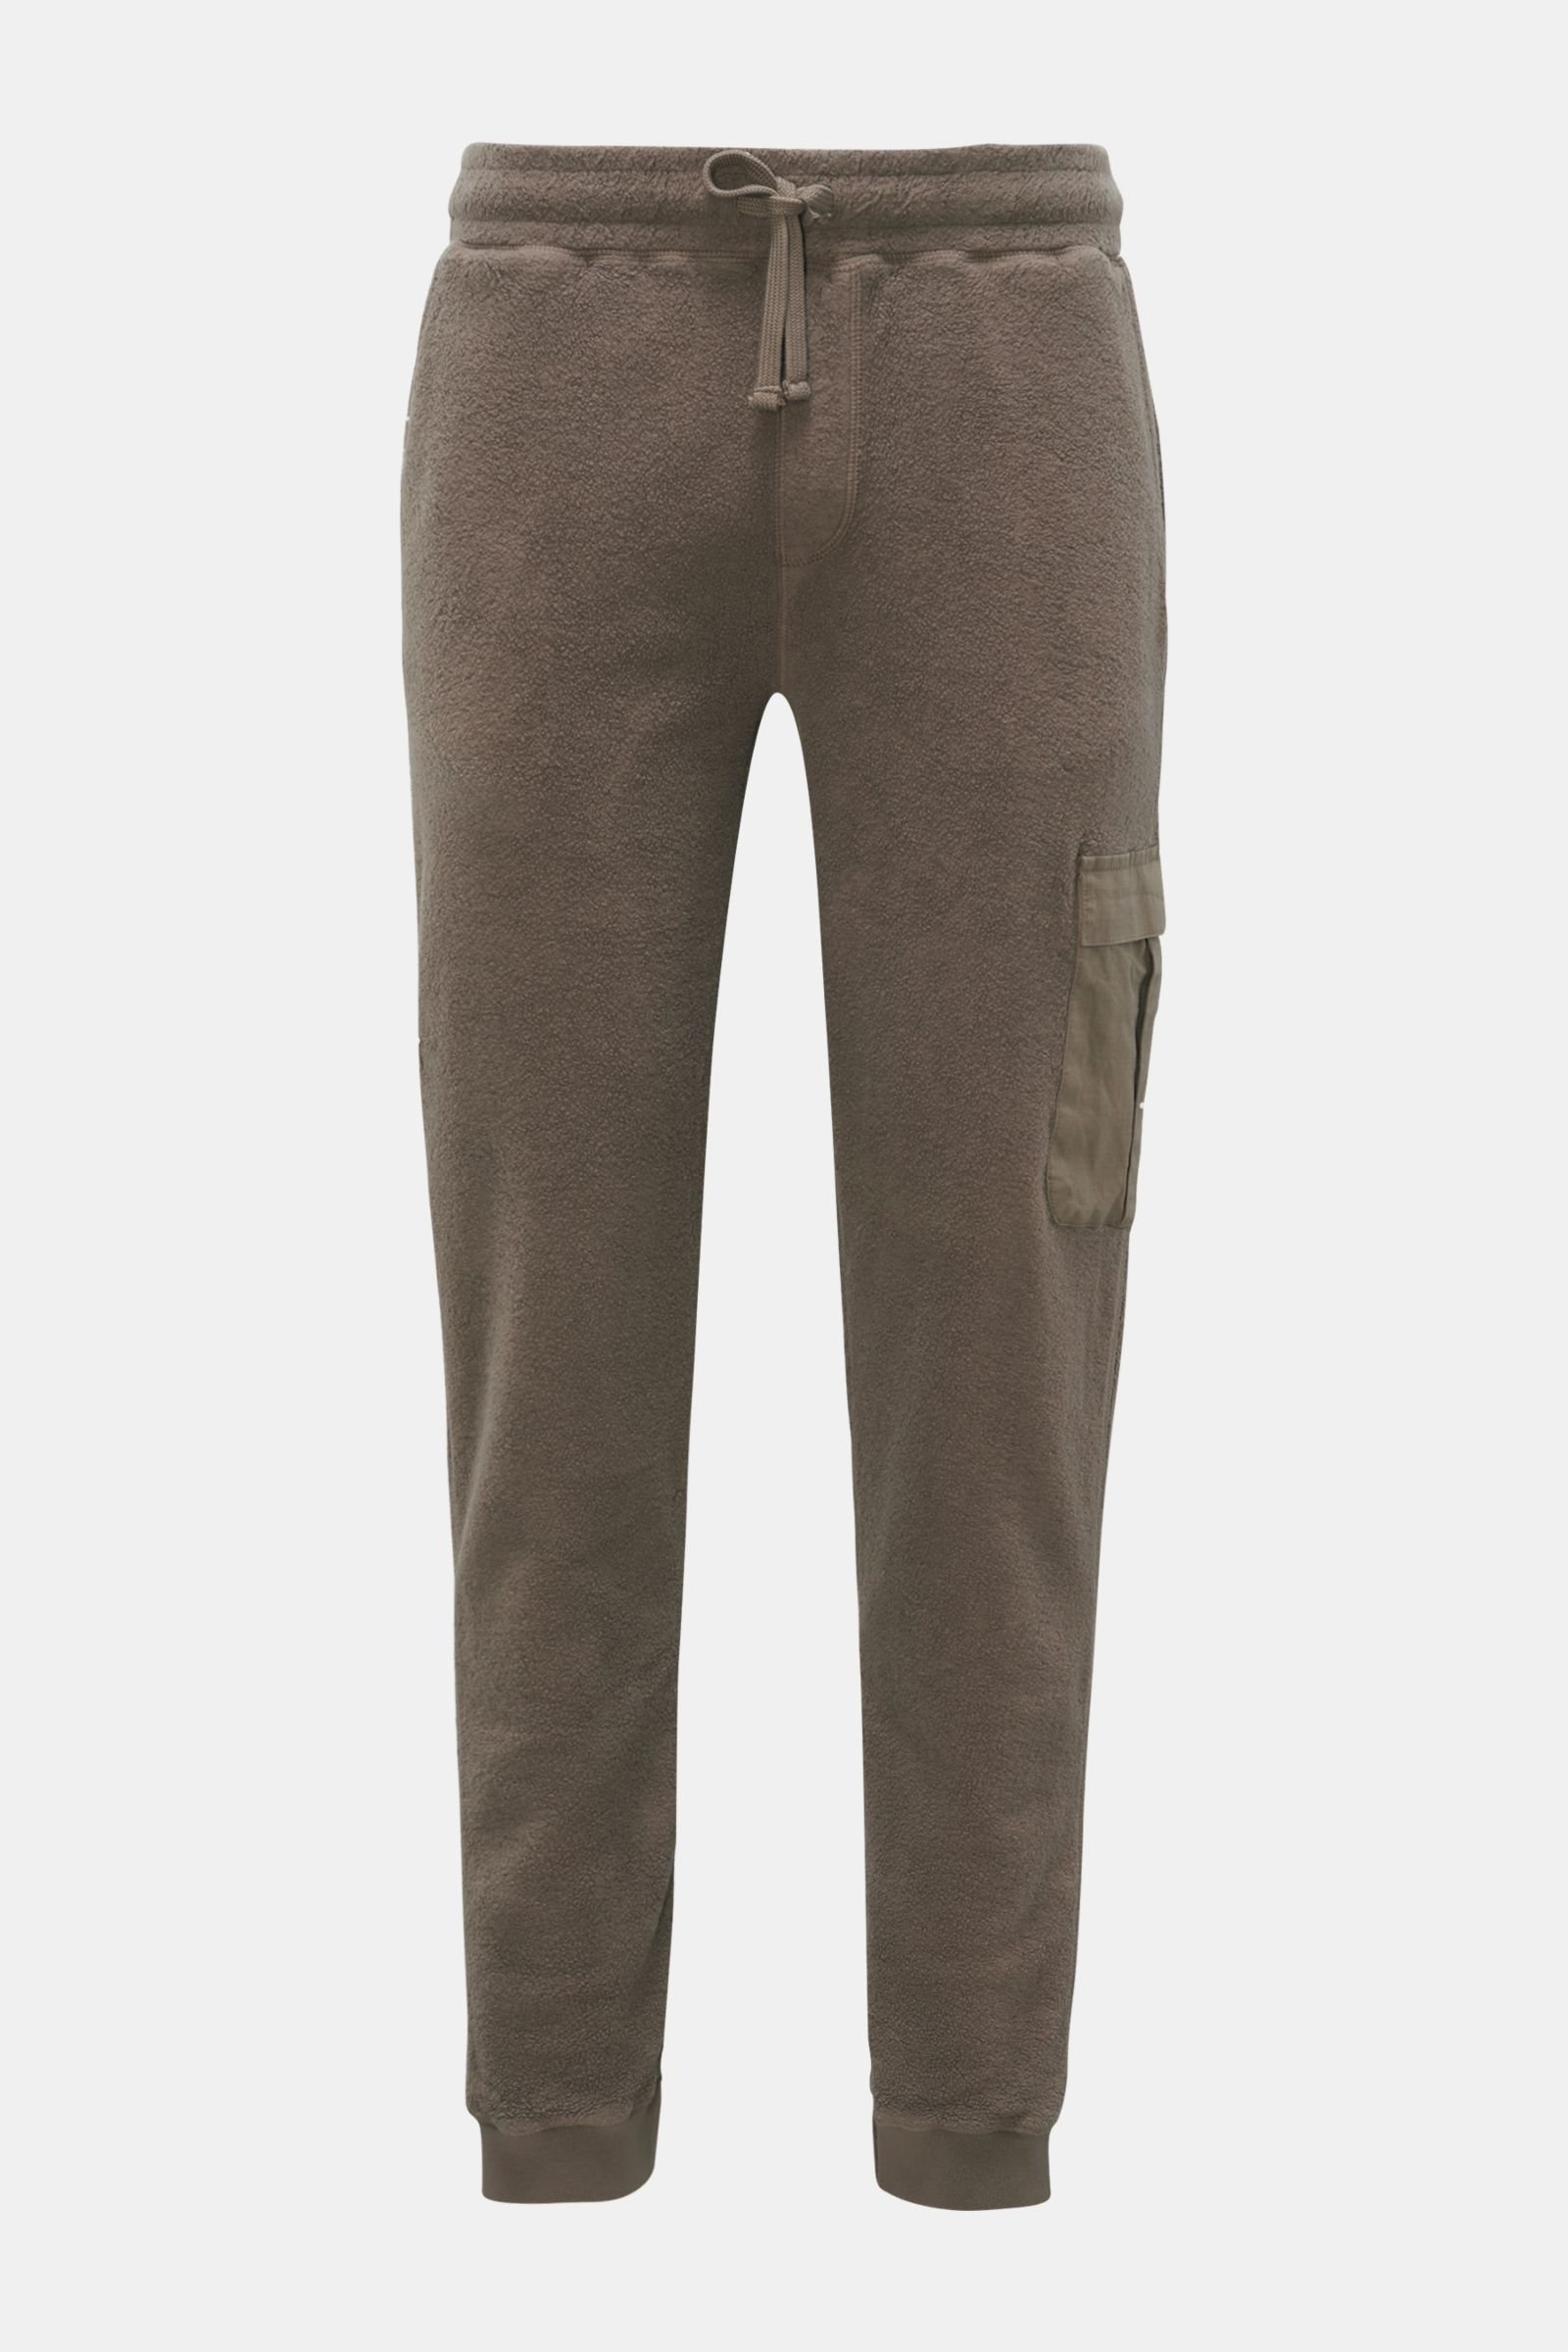 Fleece cargo jogger pants grey-brown